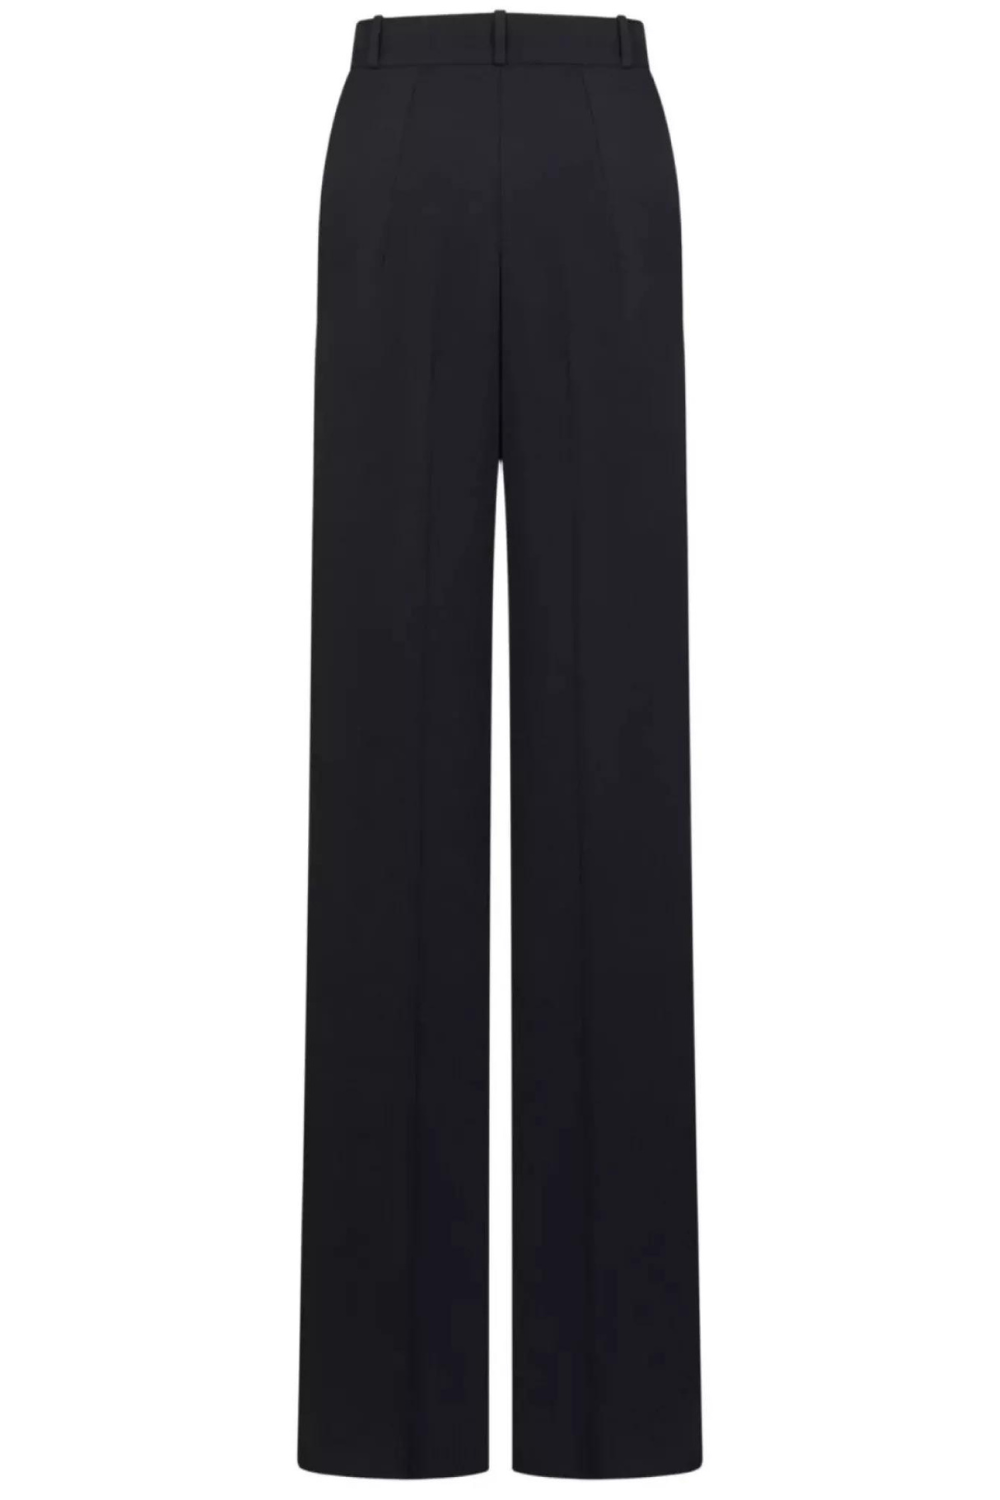 Black Suit Fabric Arrow Pants (Vivons) 